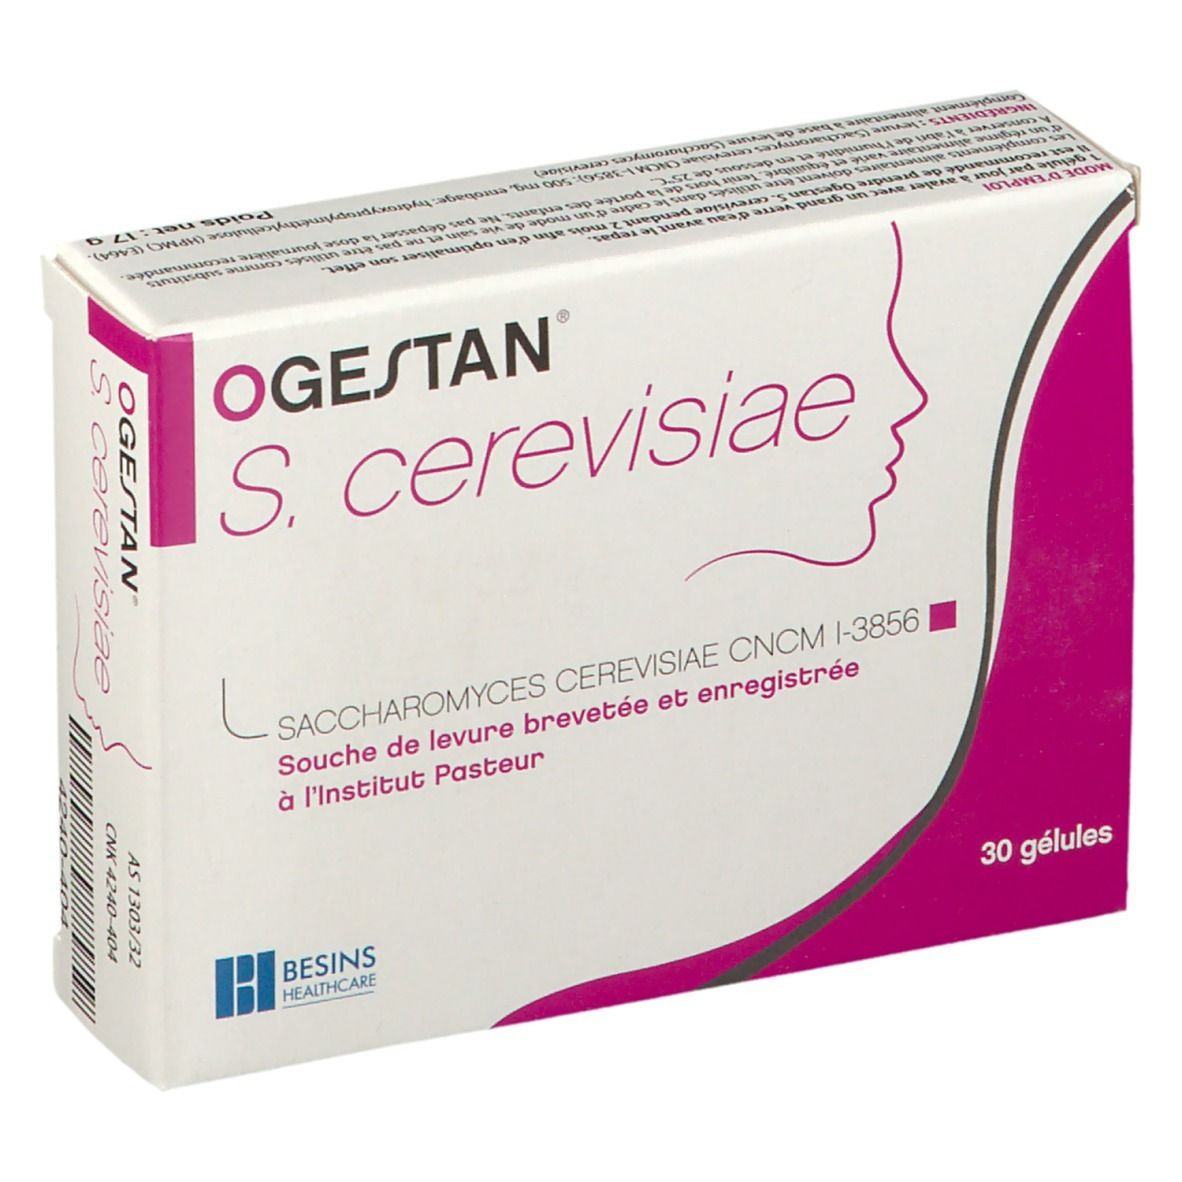 Ogestan® S. Cerevisiae